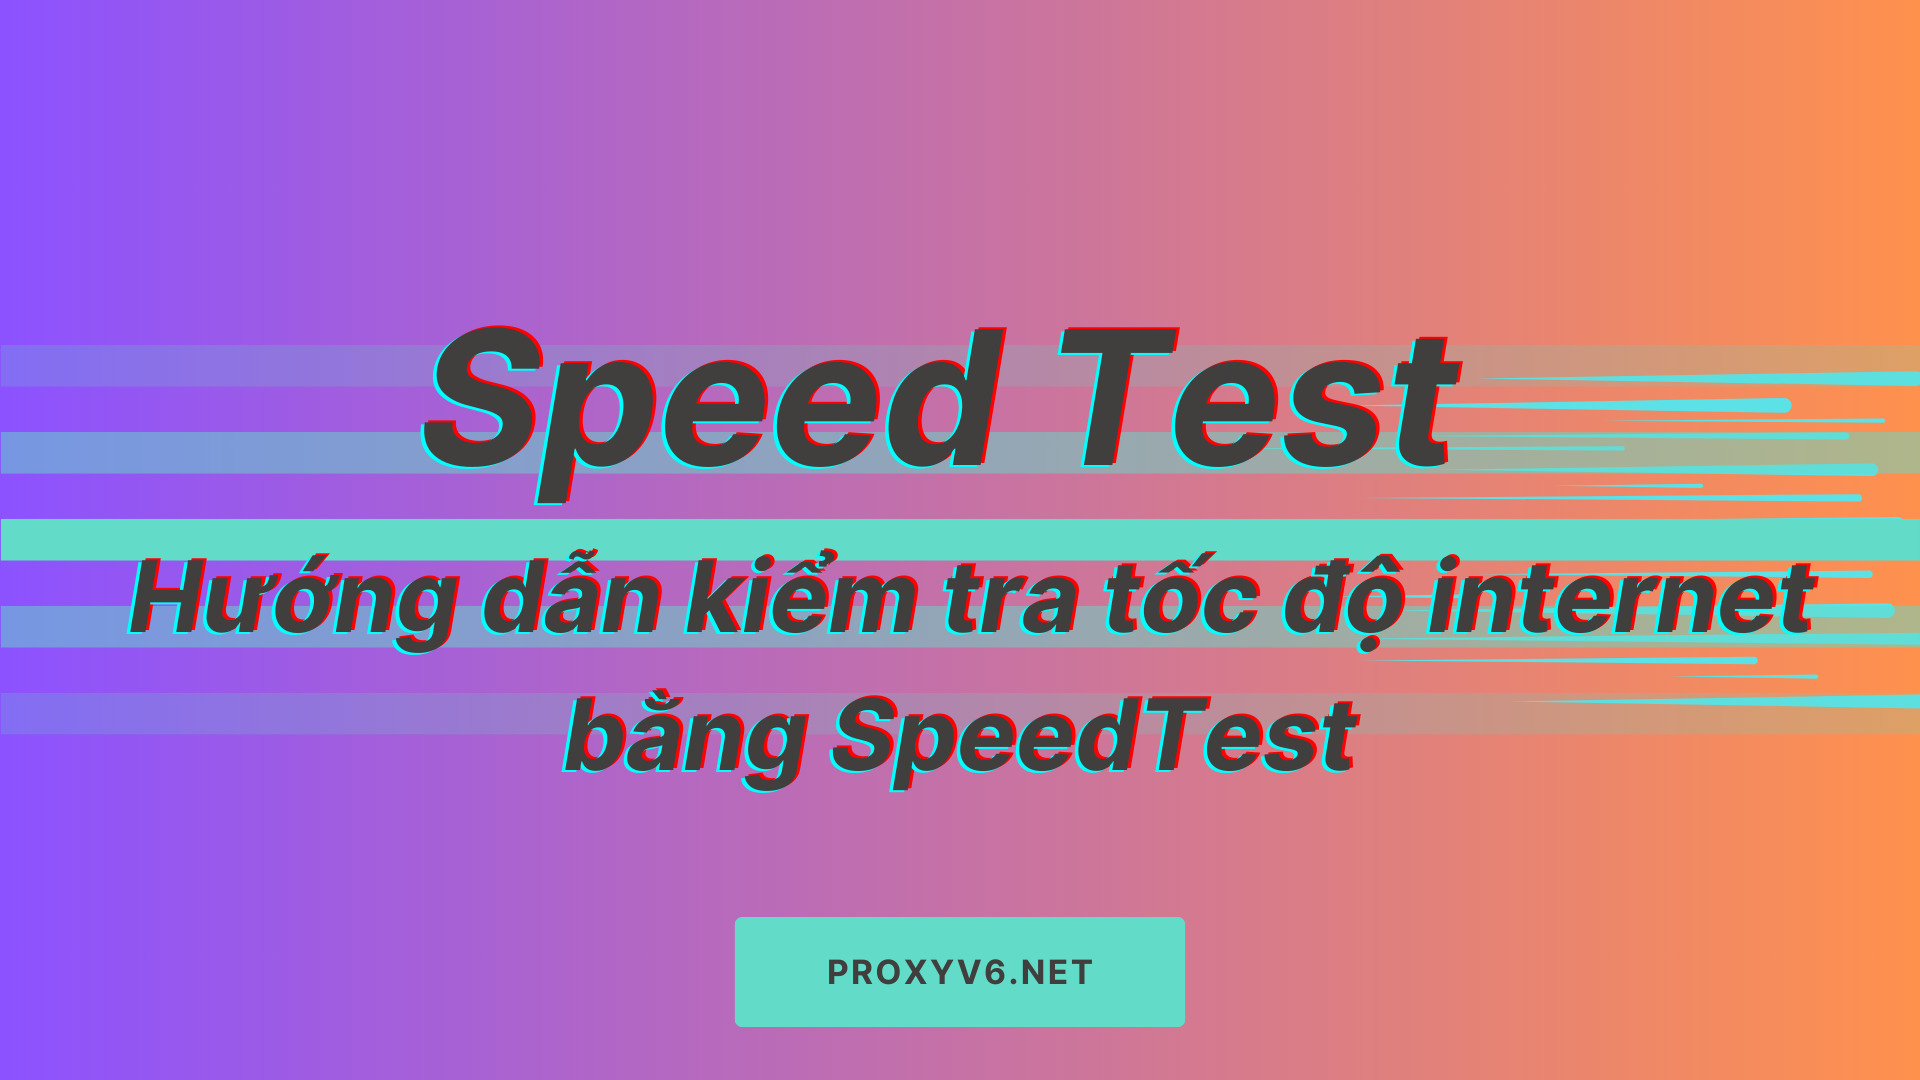 Speed Test là gì? Hướng dẫn kiểm tra tốc độ internet bằng SpeedTest